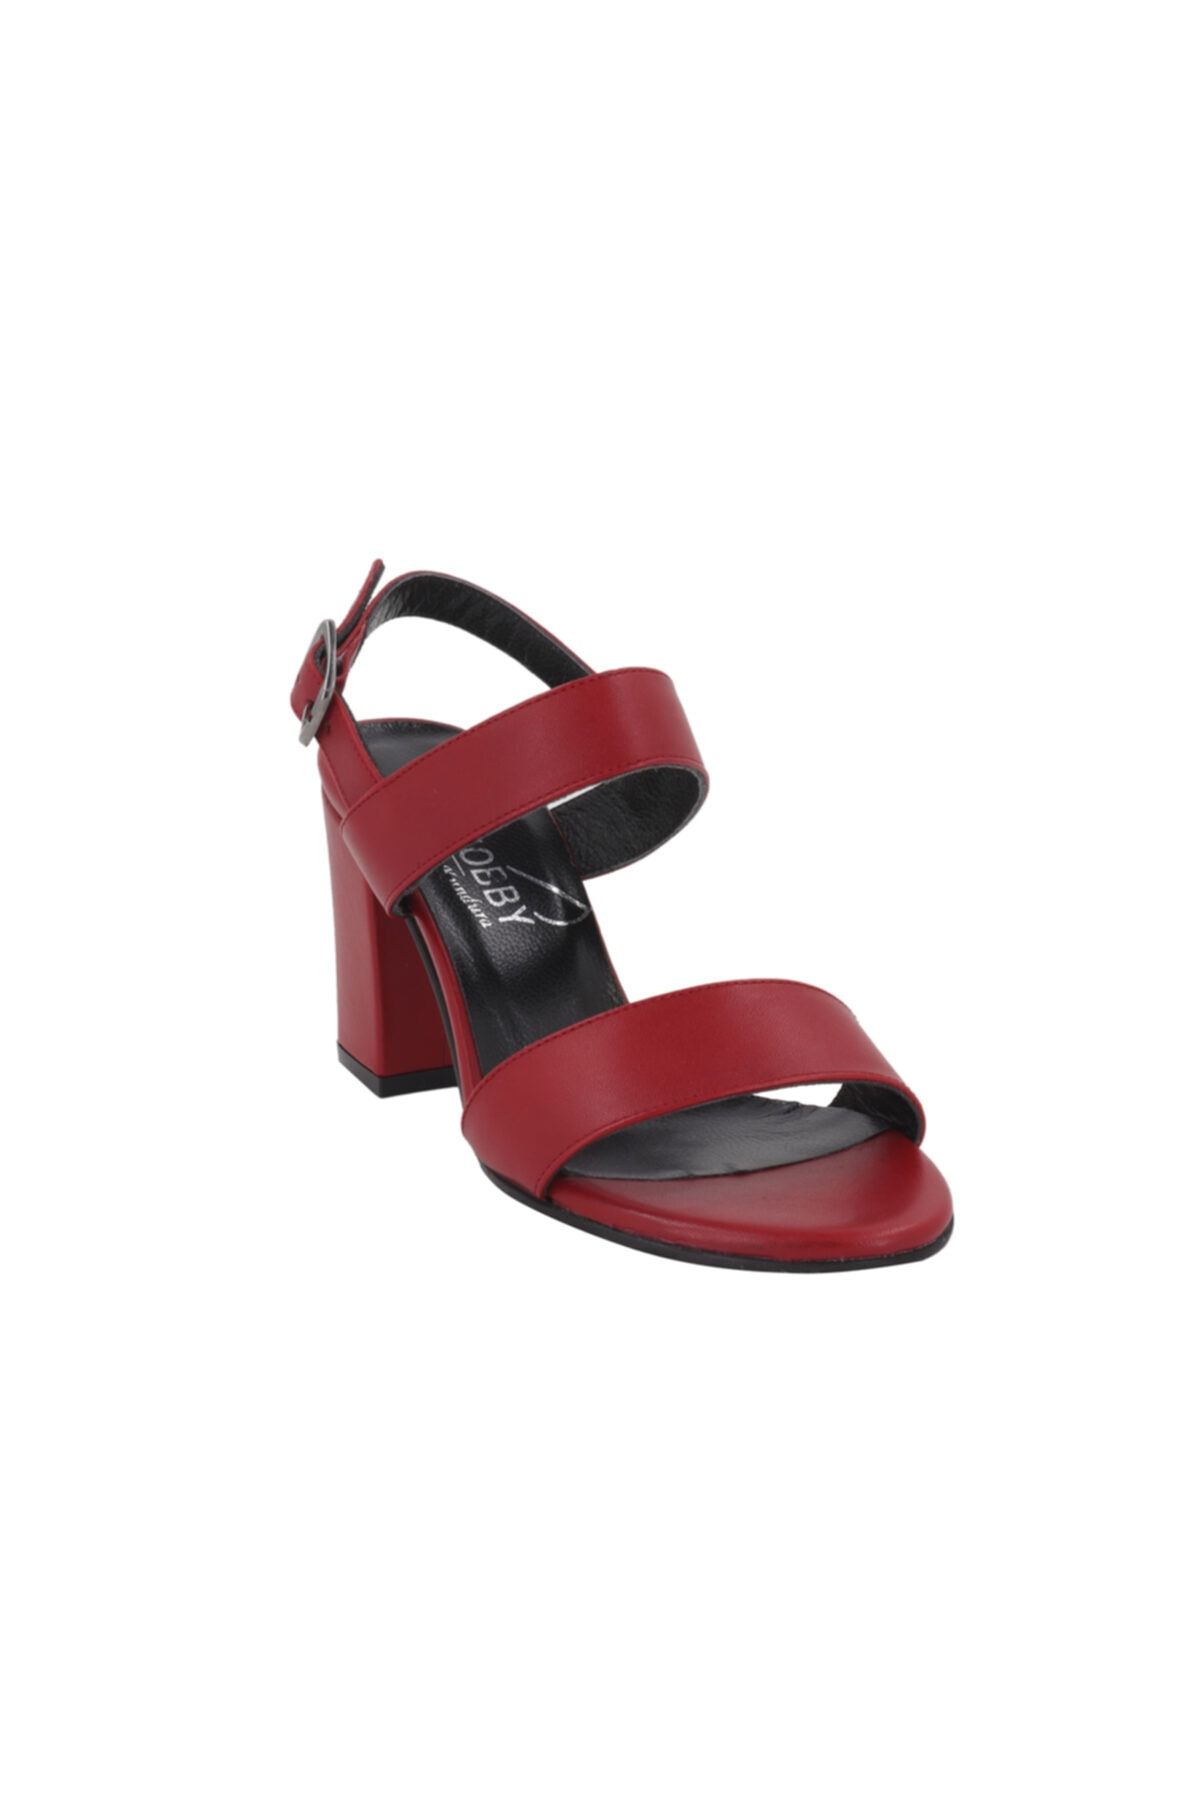 Hobby Kırmızı Topuklu Yazlık Kadın Ayakkabı Lp0048